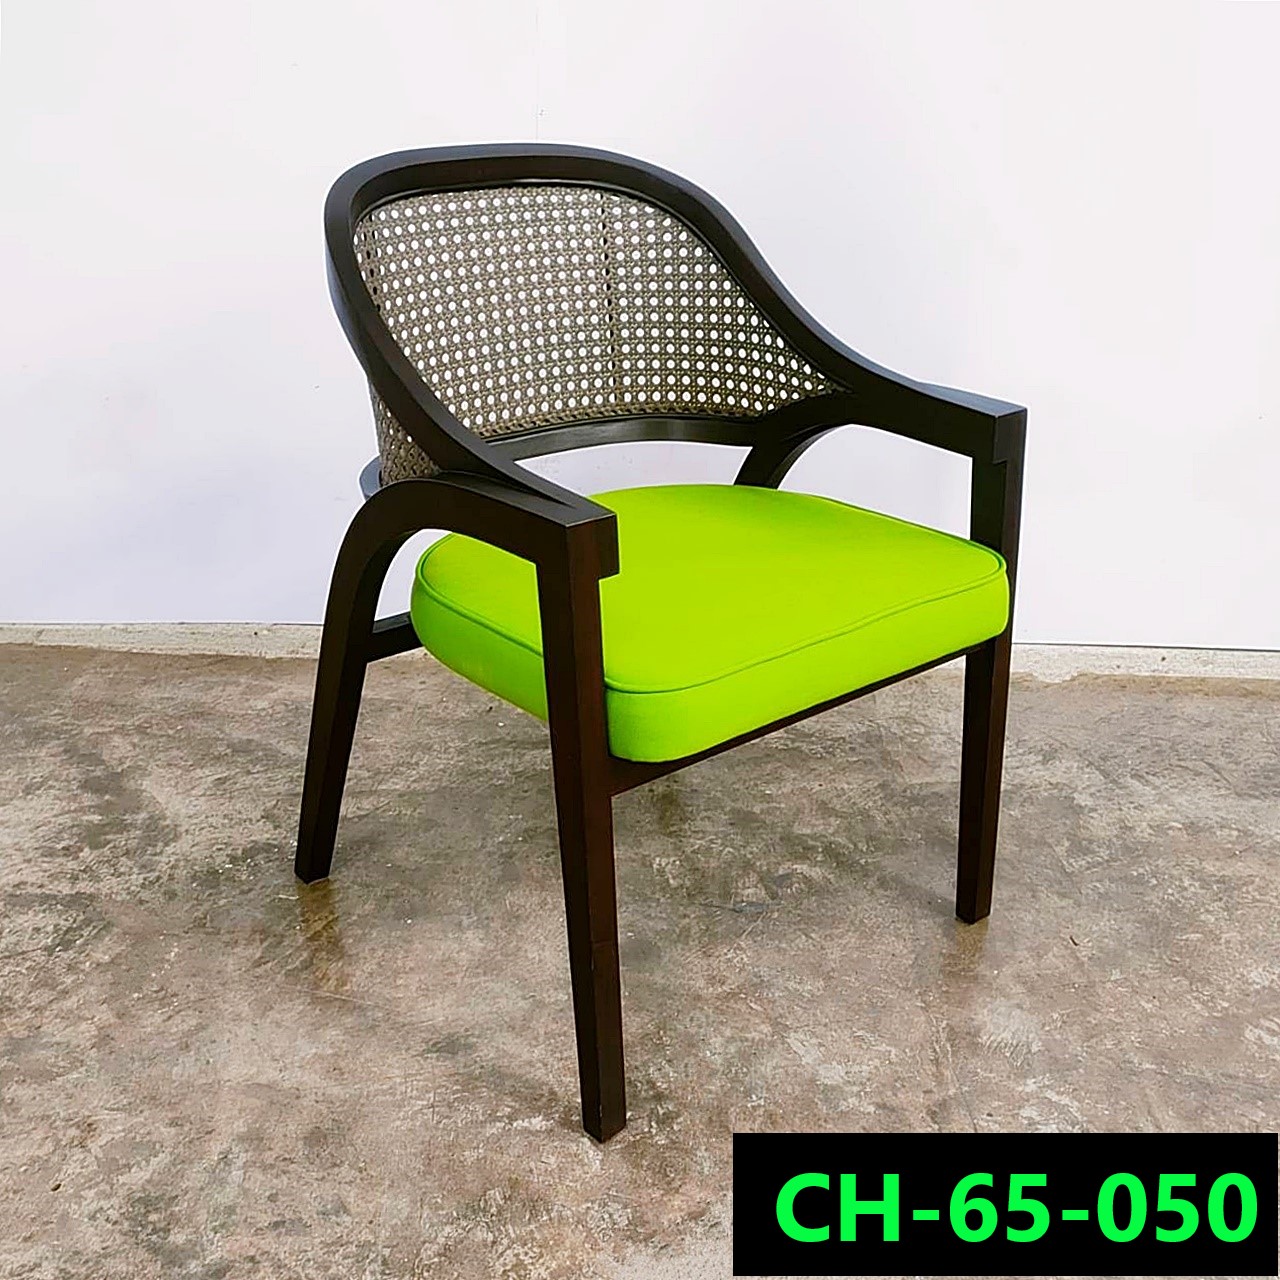 เก้าอี้ ไม้ยางพารา รหัสสินค้า CH-65-050